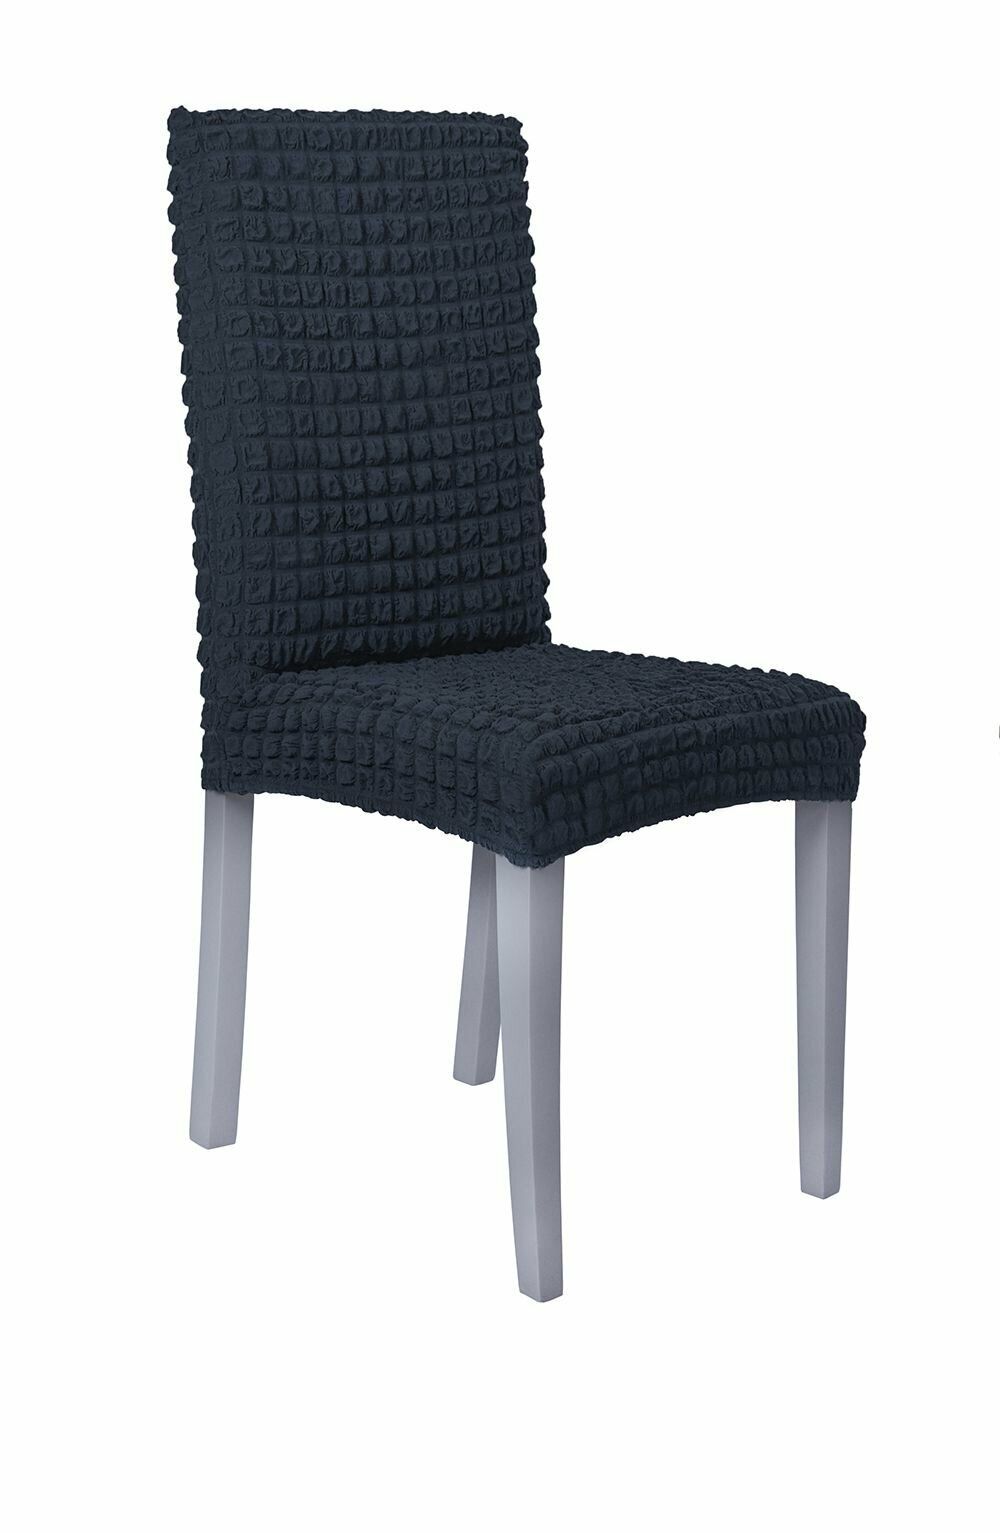 Чехол на стул со спинкой, без оборки 6 штук, на резинке, универсальные.